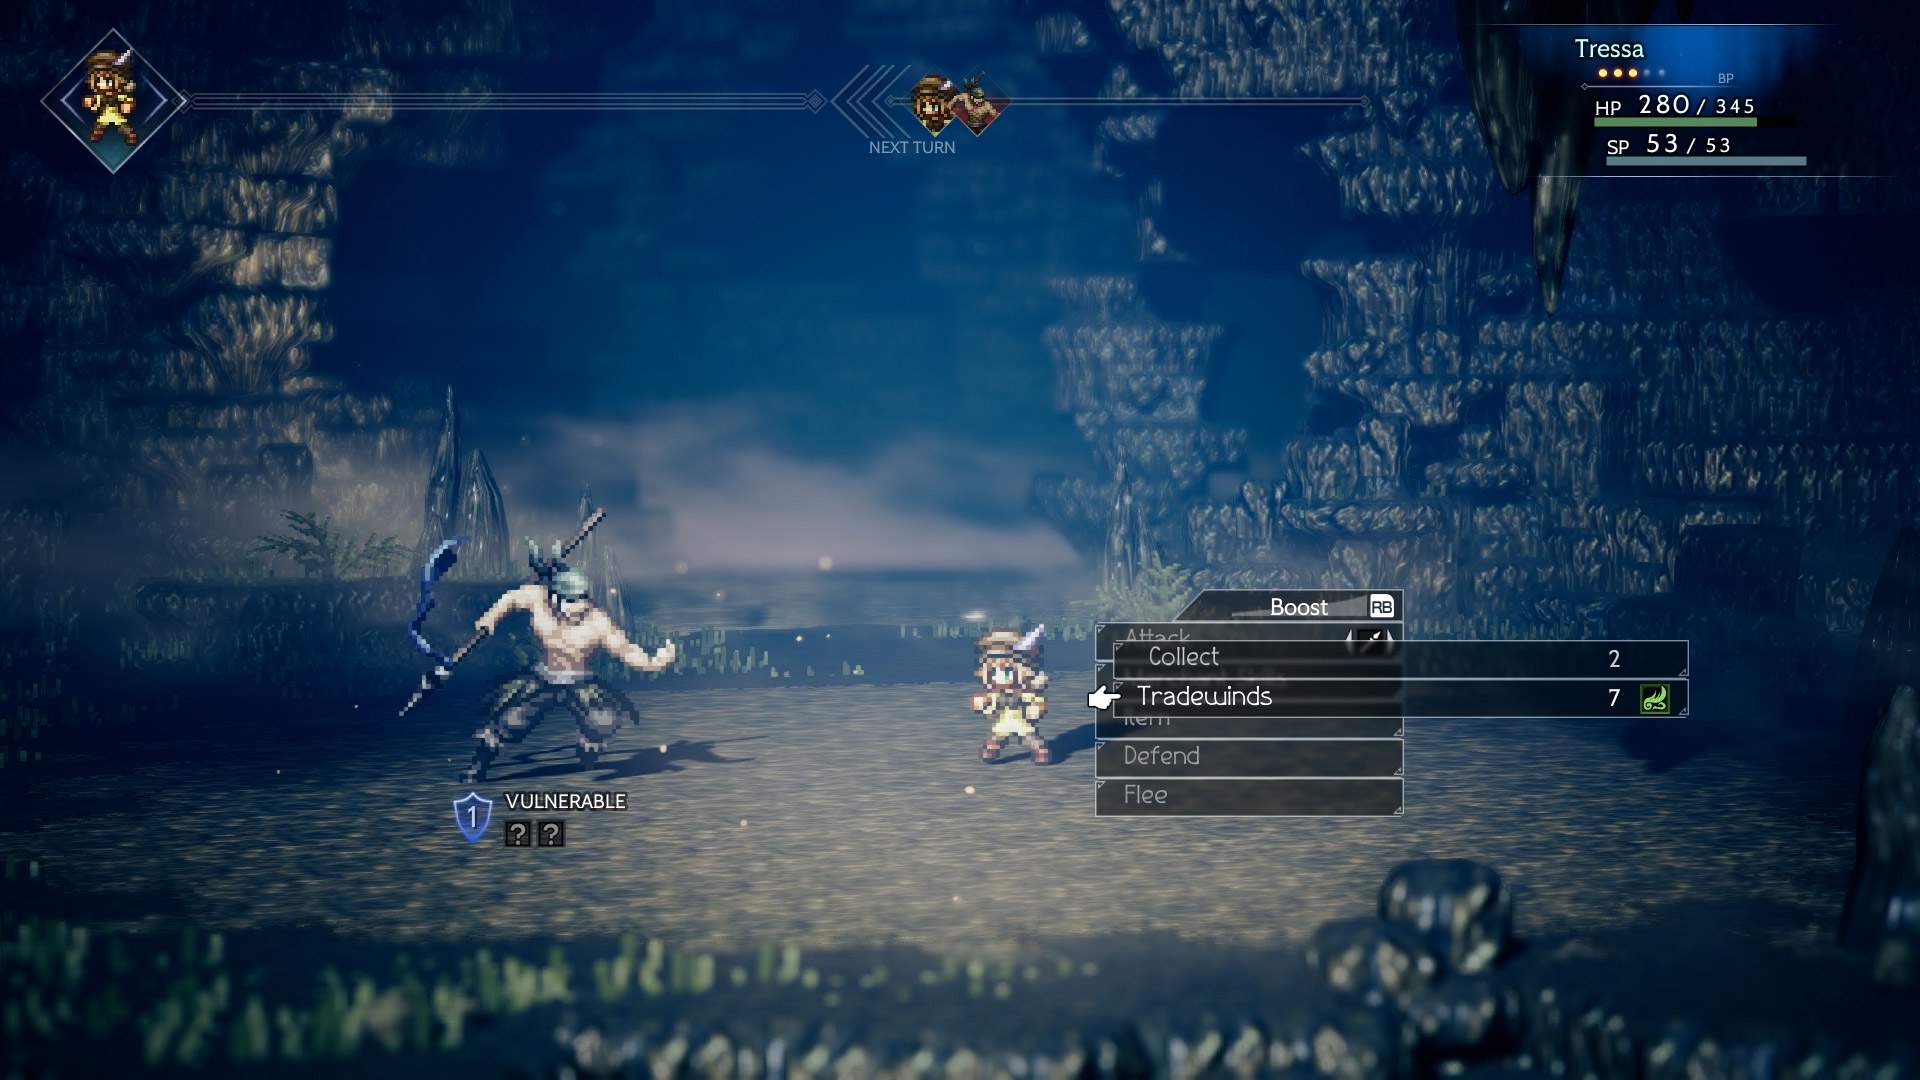 Der Screenshot zeigt einen düsteren Dungeon, in dem Tressa sich im rundenbasierten Kampf einem Gegner stellt.